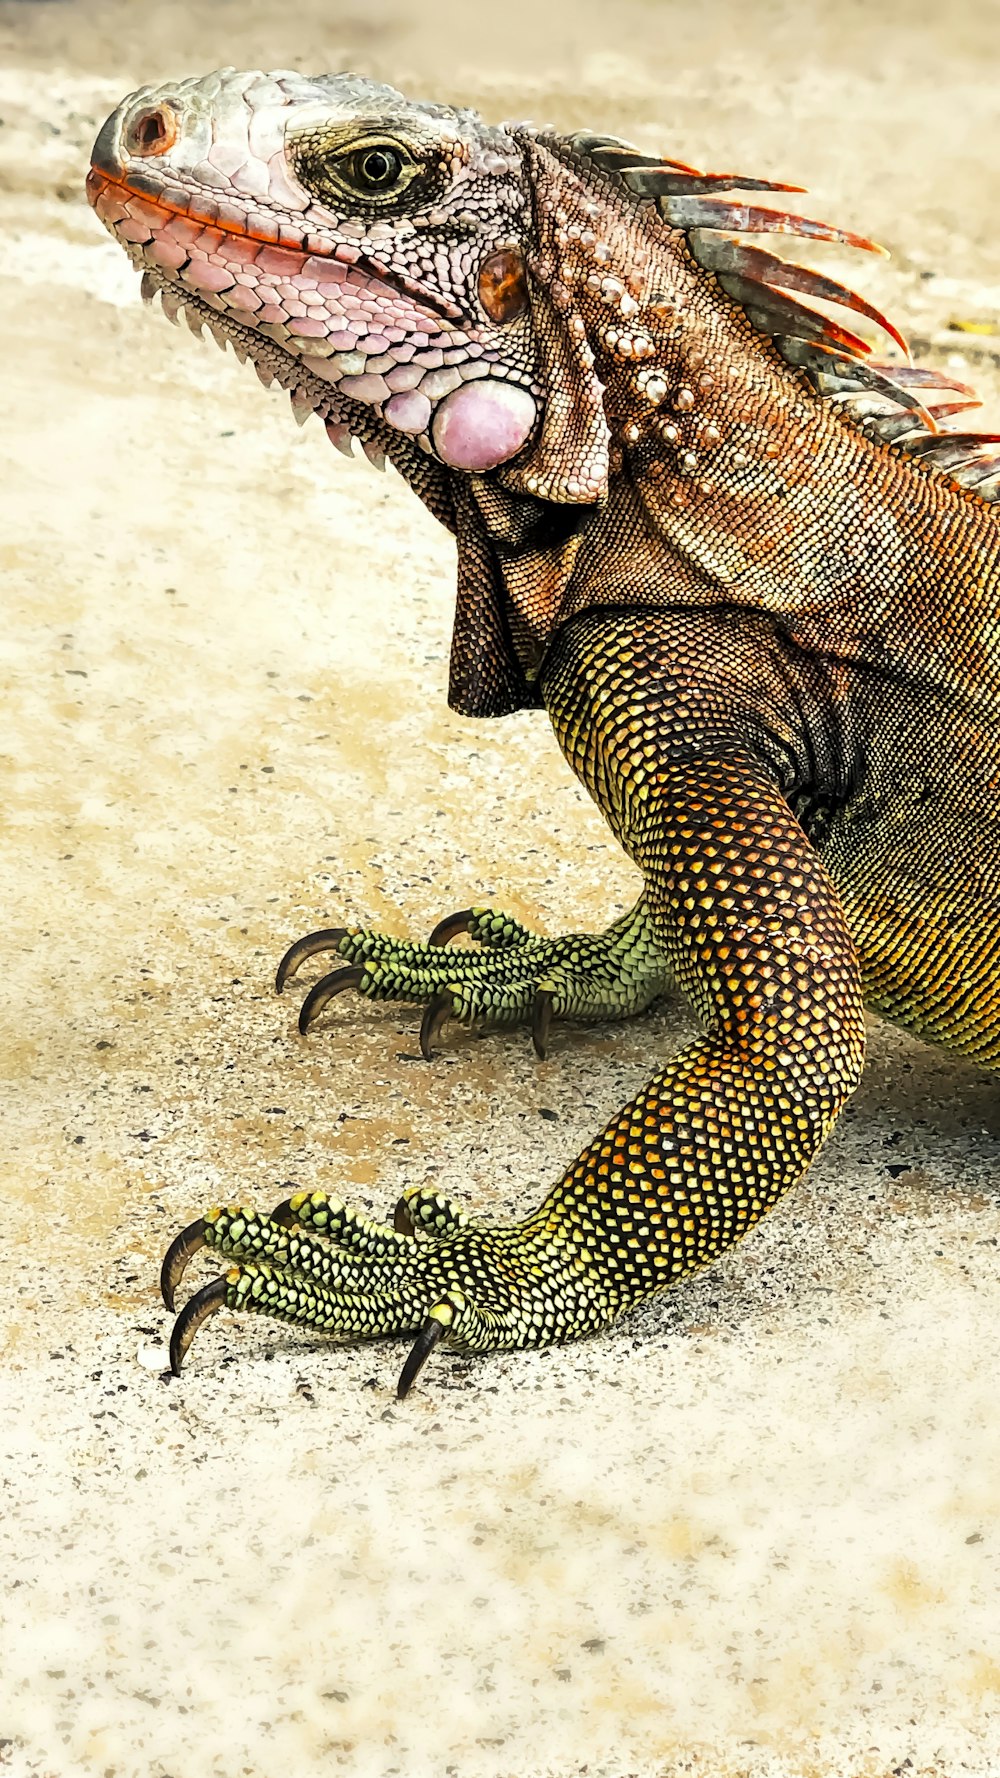 grünes und schwarzes Reptil auf weißem Sand